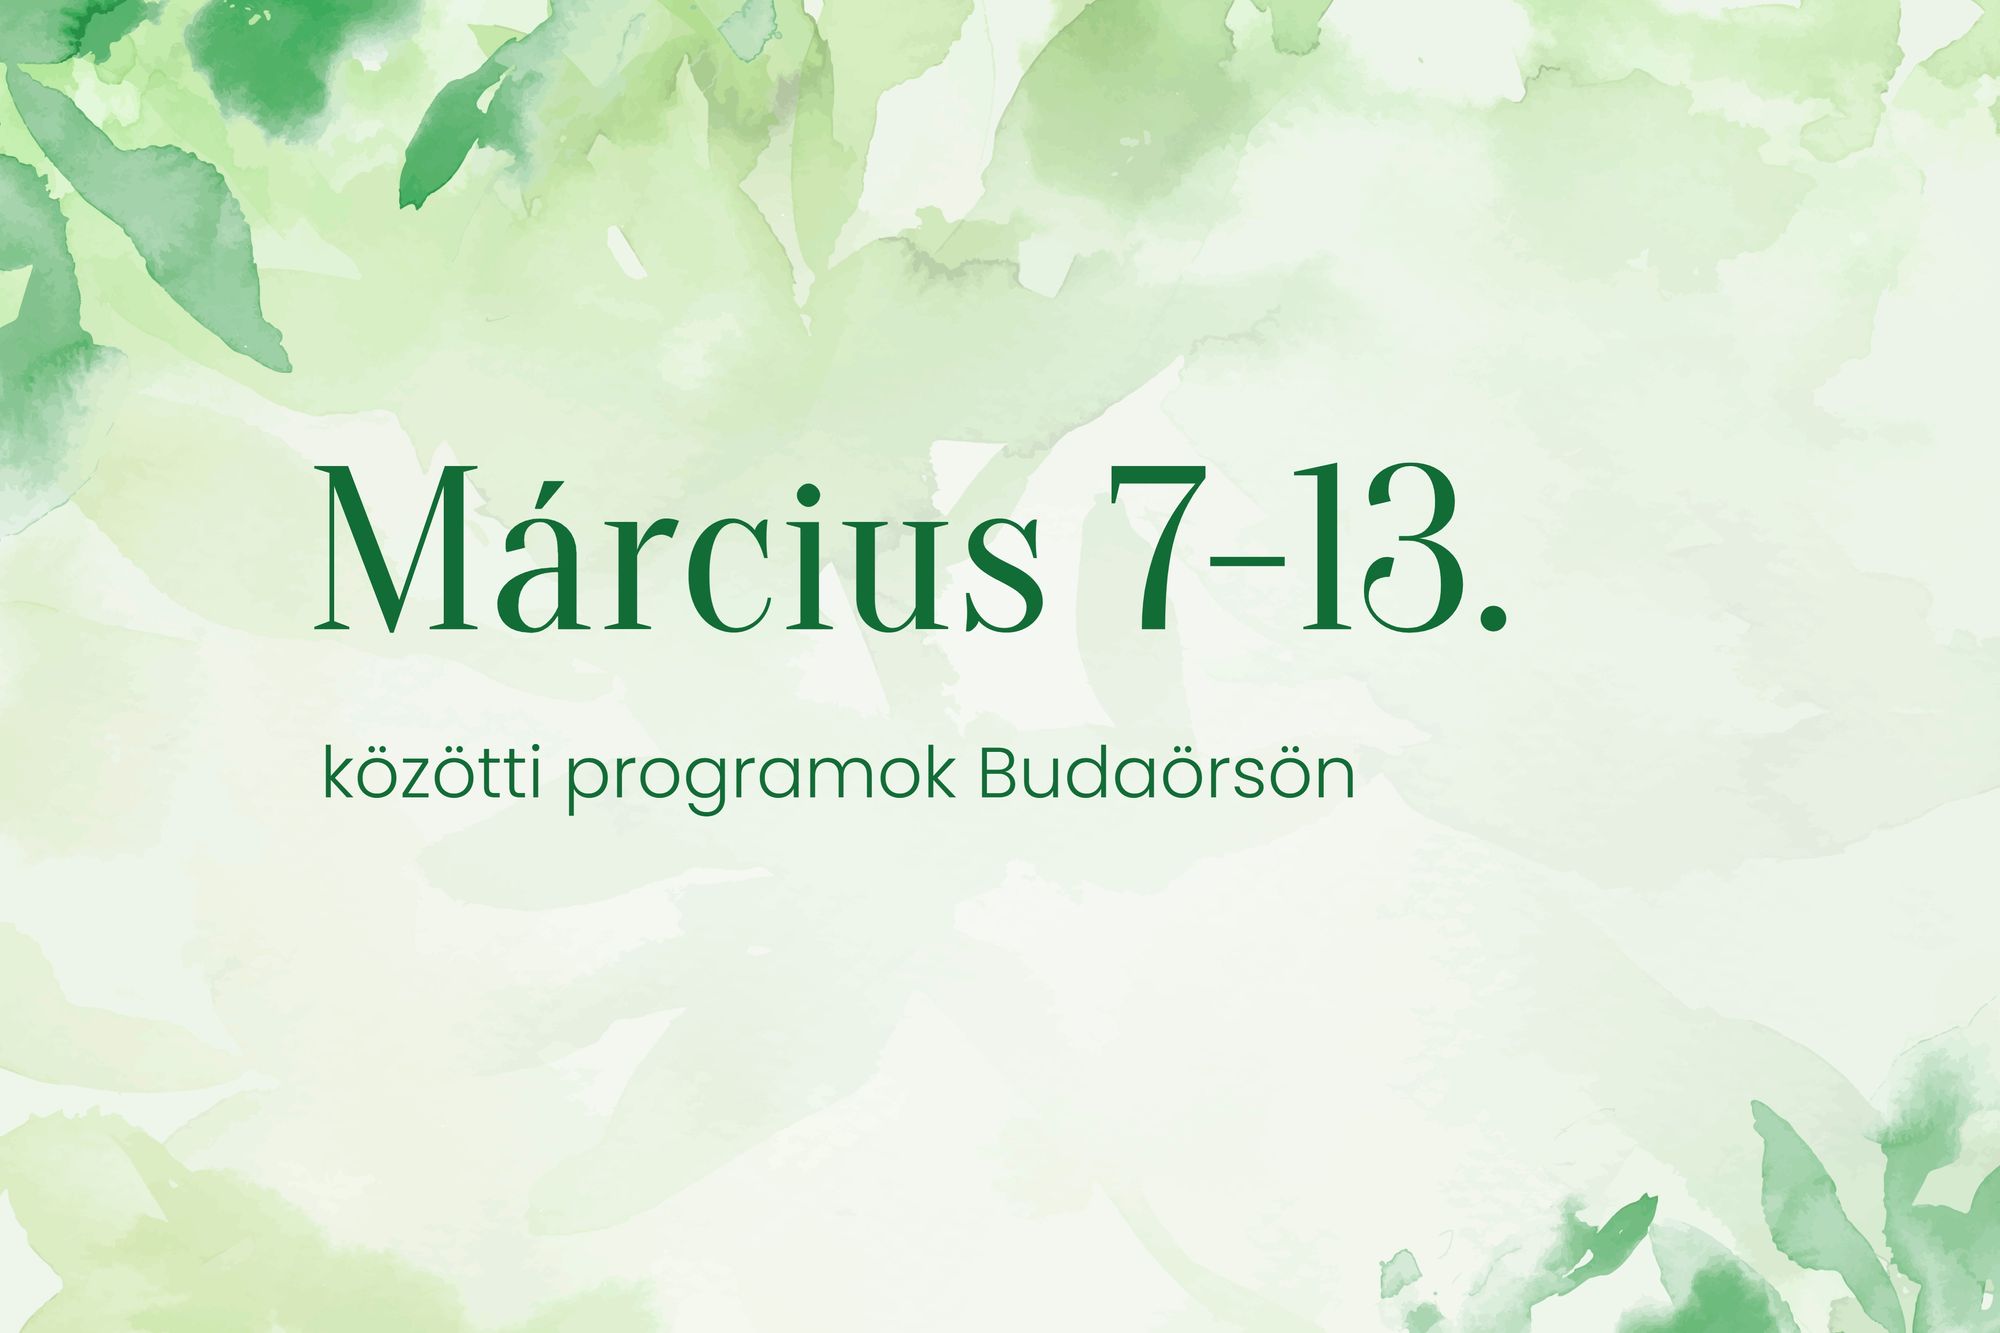 Március 7-13. közötti programok Budaörsön